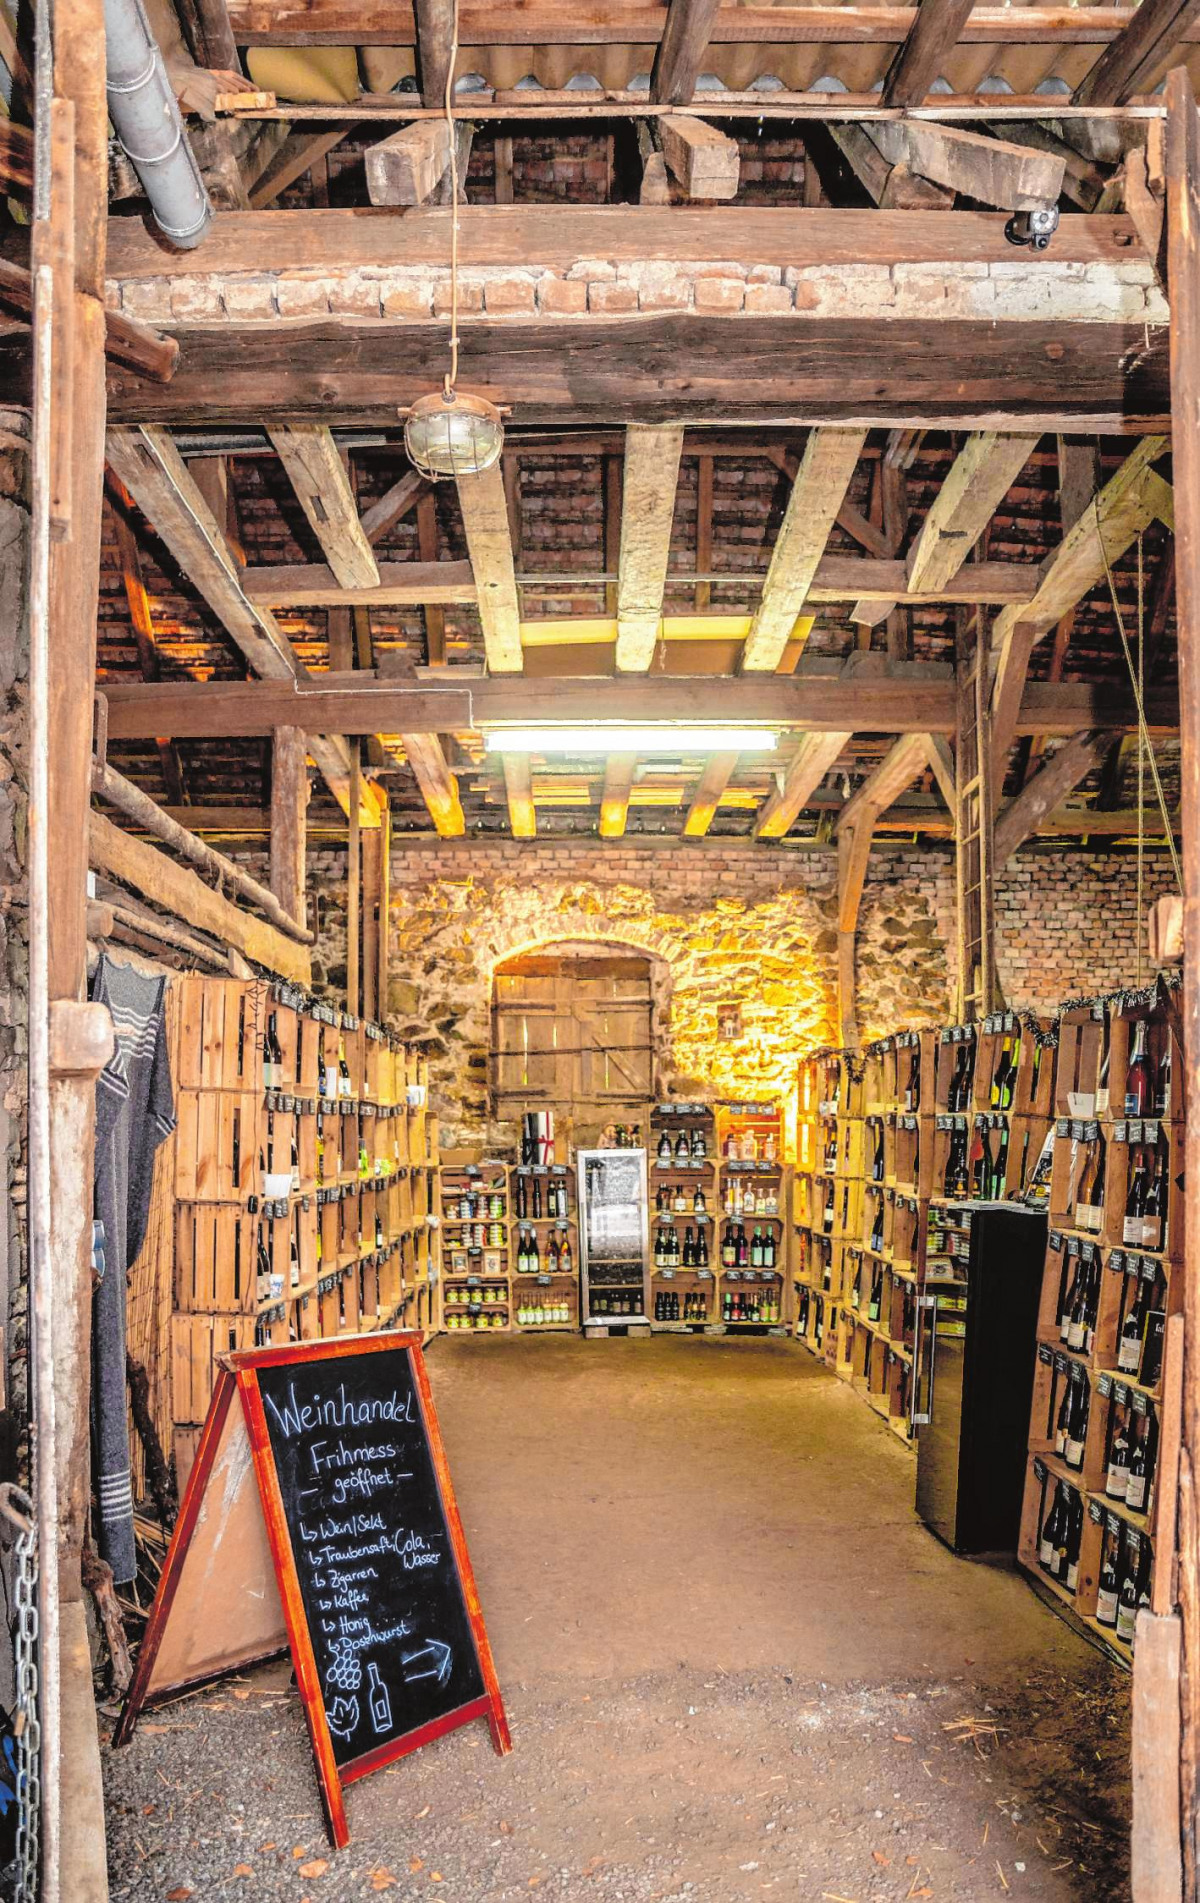 Der Weinhandel „Frihmess“ befindet sich in einer Scheune aus dem 18. Jahrhundert. | Bilder: Thomas Neu